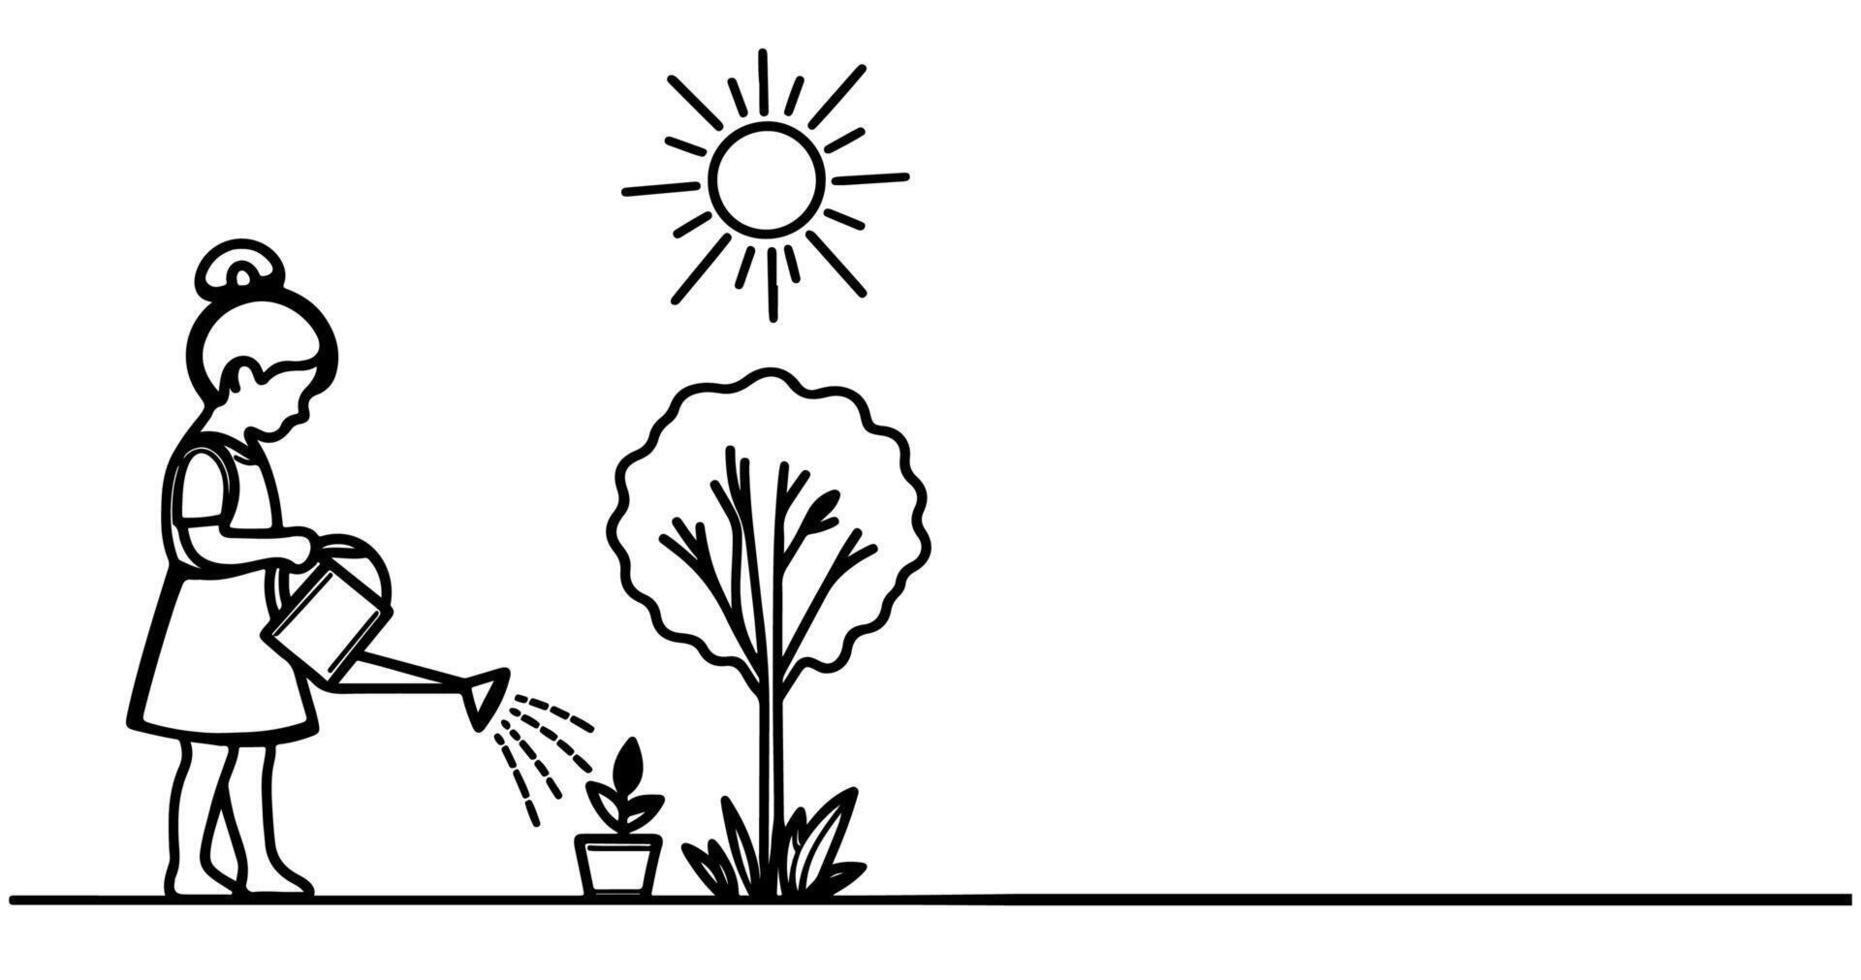 continu un noir ligne art dessin silhouette de les enfants arrosage une arbre. plantation arbre à enregistrer le monde et Terre journée réduire global chauffage croissance concept vecteur illustration sur blanc Contexte